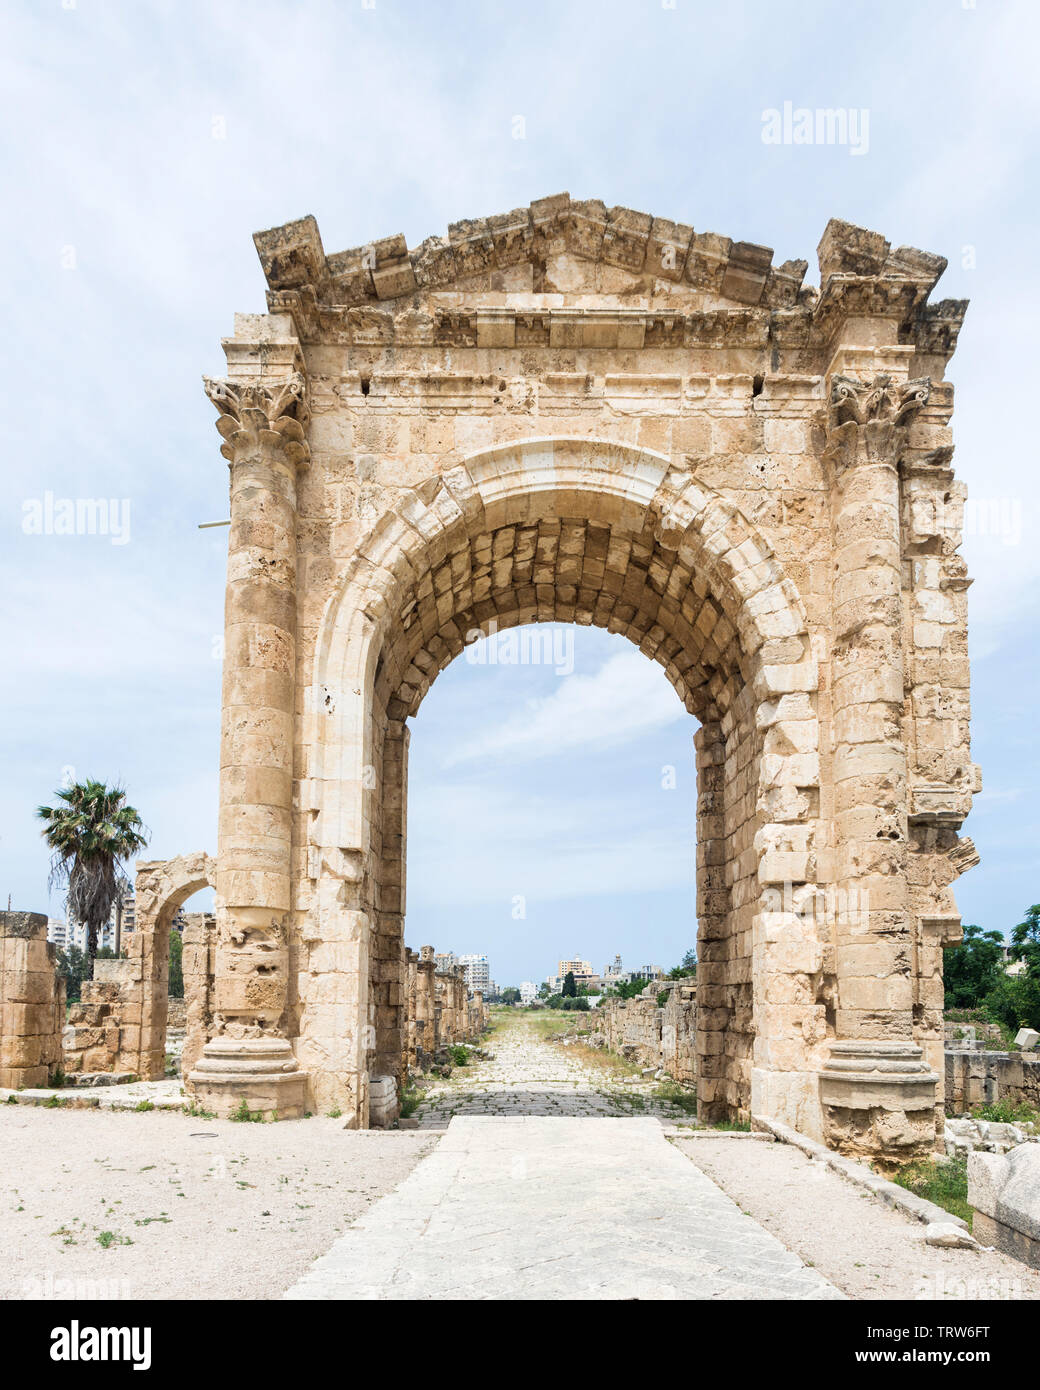 El arco de triunfo de Adriano, al sitio arqueológico de Bass, Tiro, Líbano Foto de stock